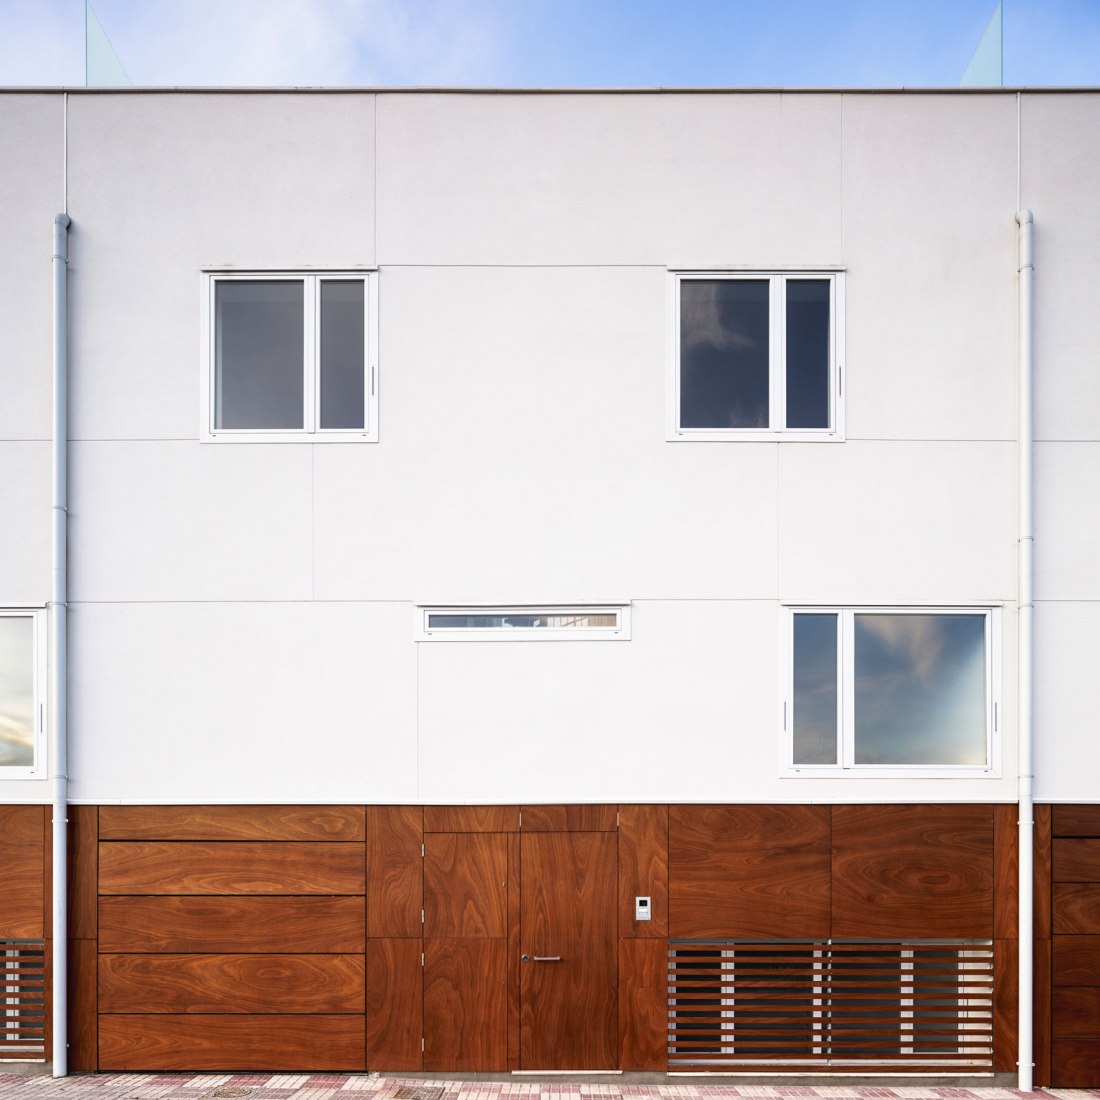 Proyecto de tres viviendas en Armilla por Martínez y Soler Arquitectura. Fotografía por Fernando Alda.